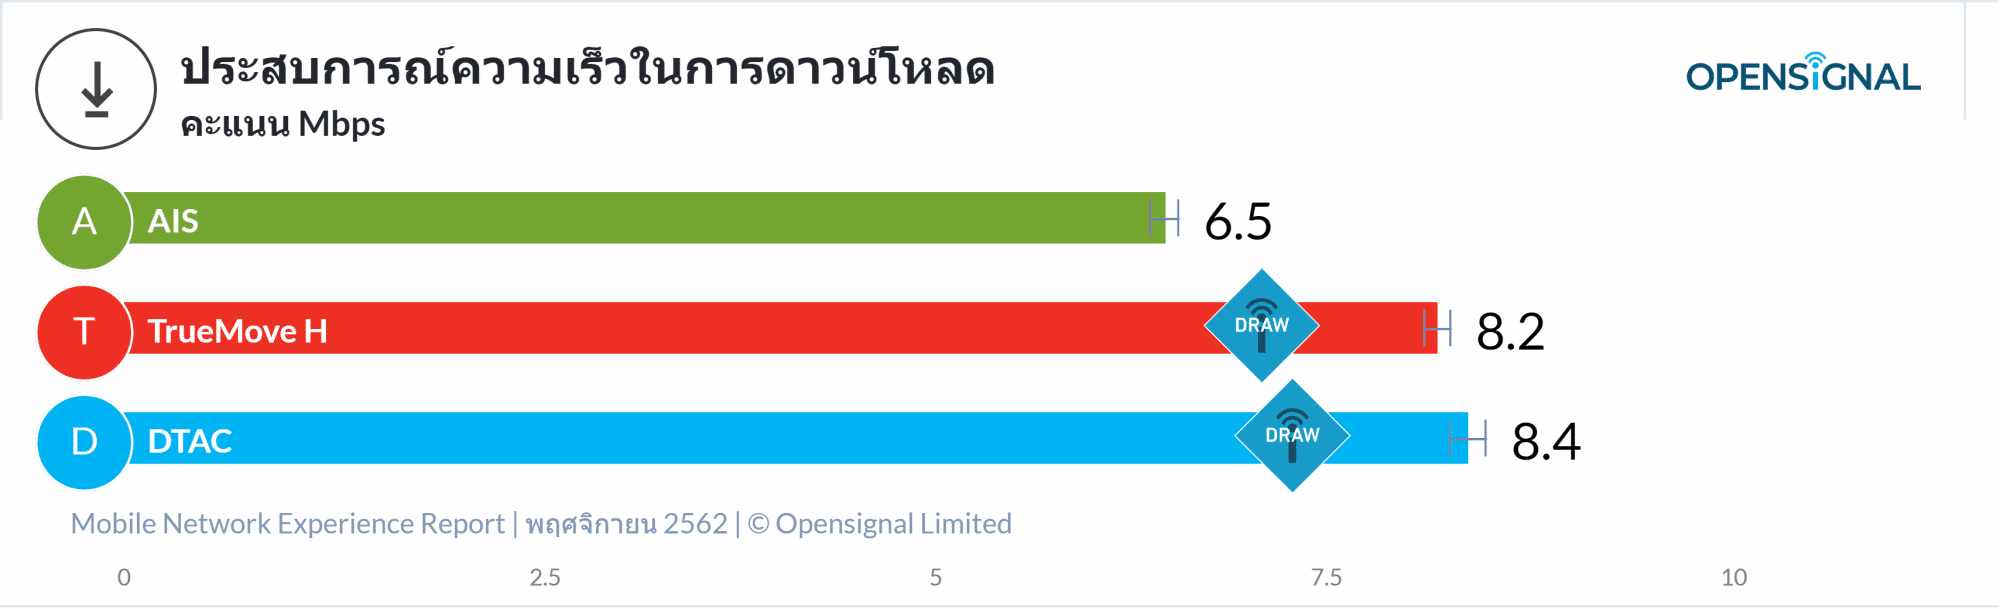 OpenSignal เผยรายงานวิเคราะห์ประสบการณ์เครือข่ายมือถือของไทย TrueMove H นำอันดับหนึ่ง 11